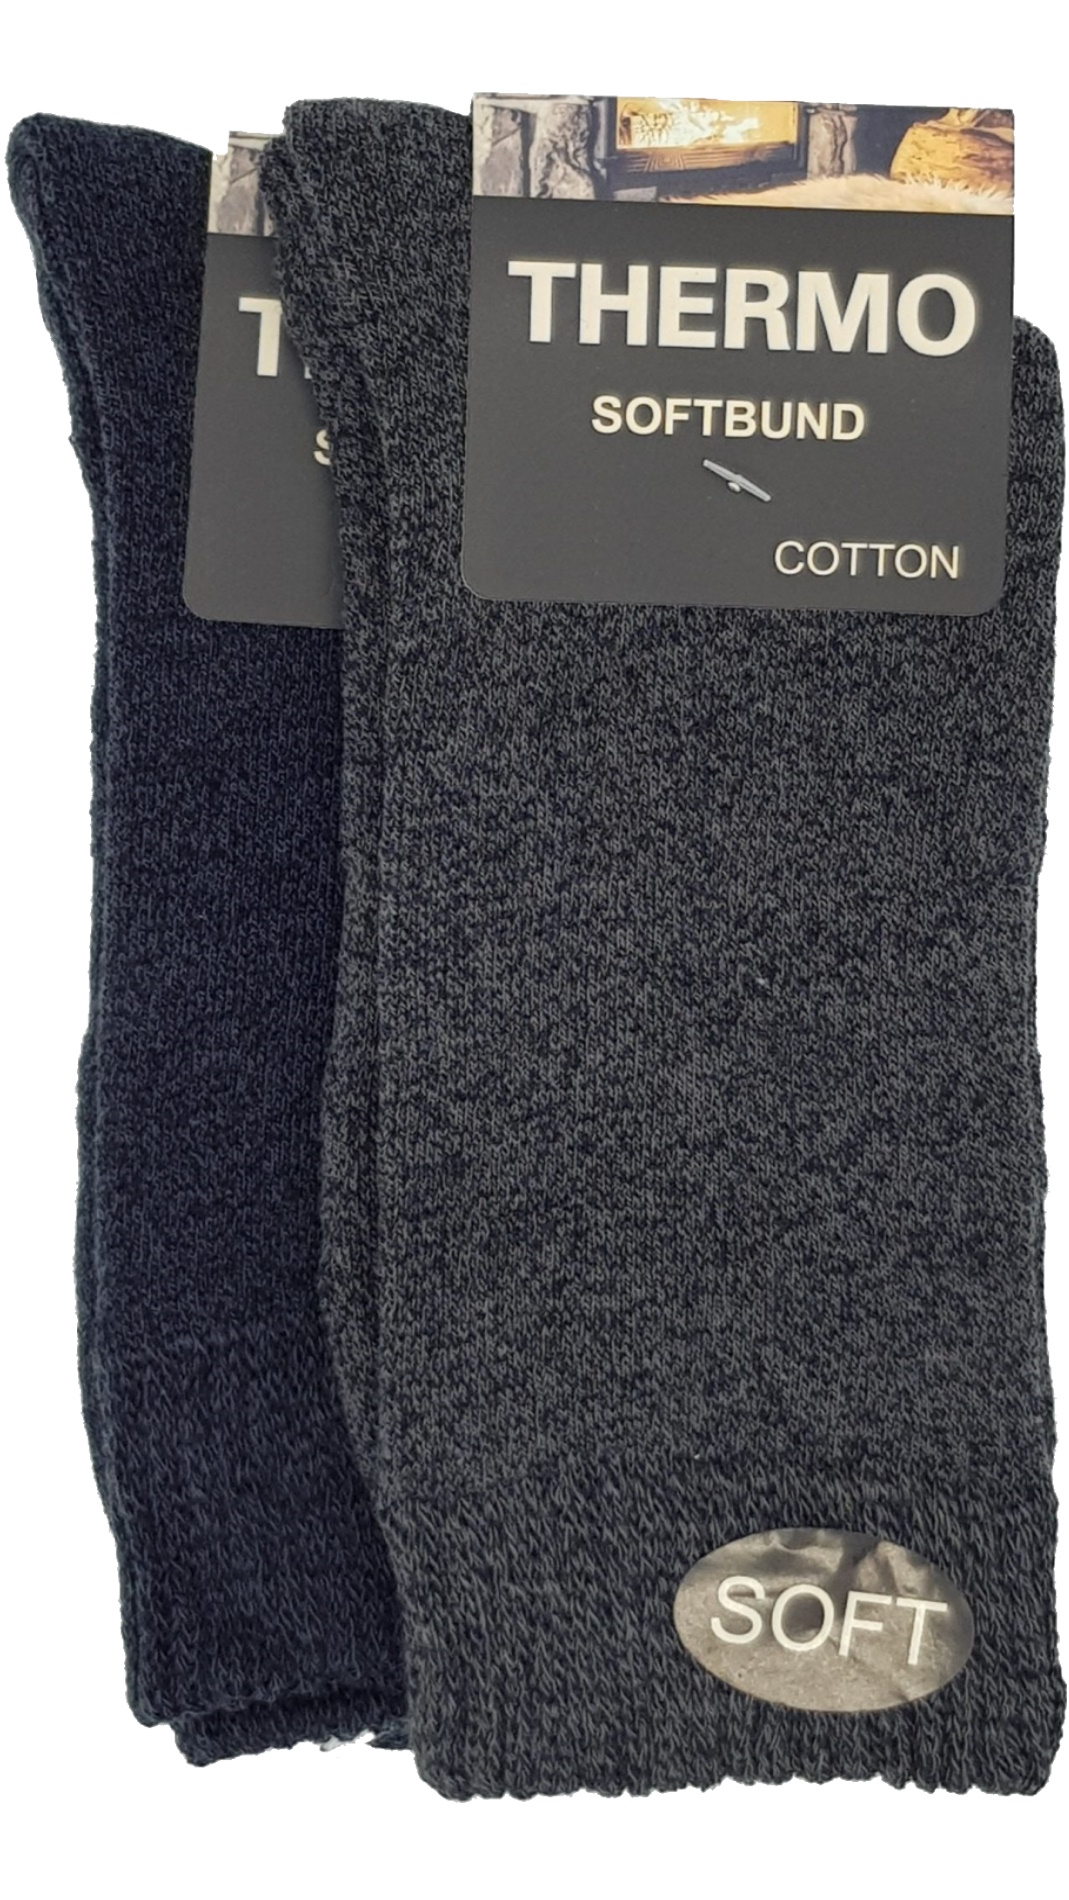 Thermo Soft Socken (23402,38413) Paar – Softbund 2